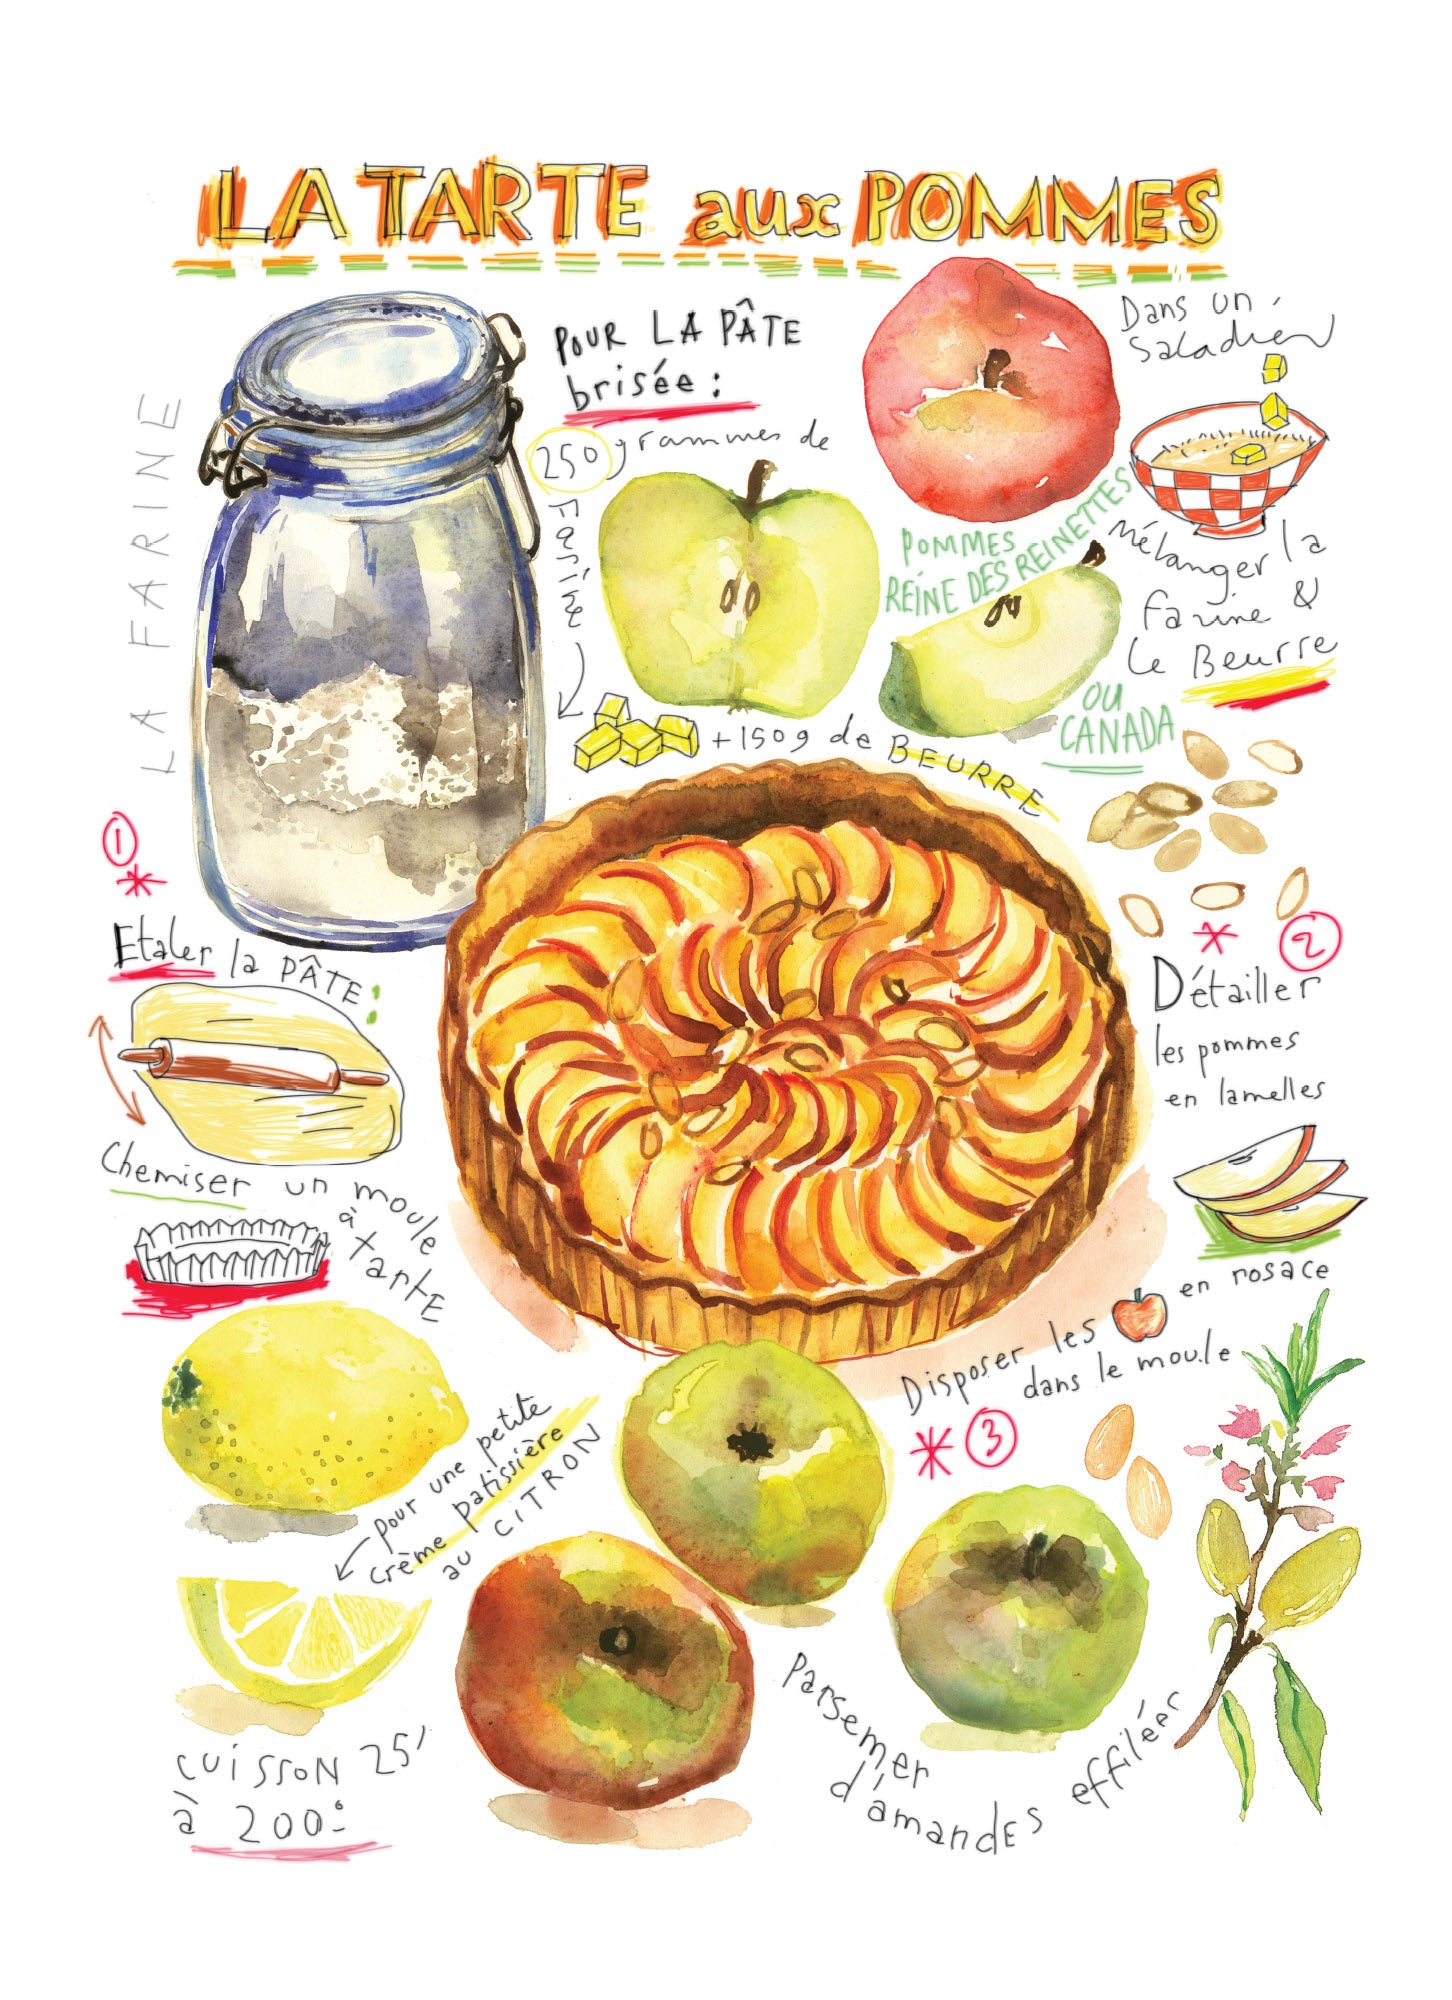 Tarte aux pommes - Linge de maison / Apple Pie Recipe Kitchen Linen